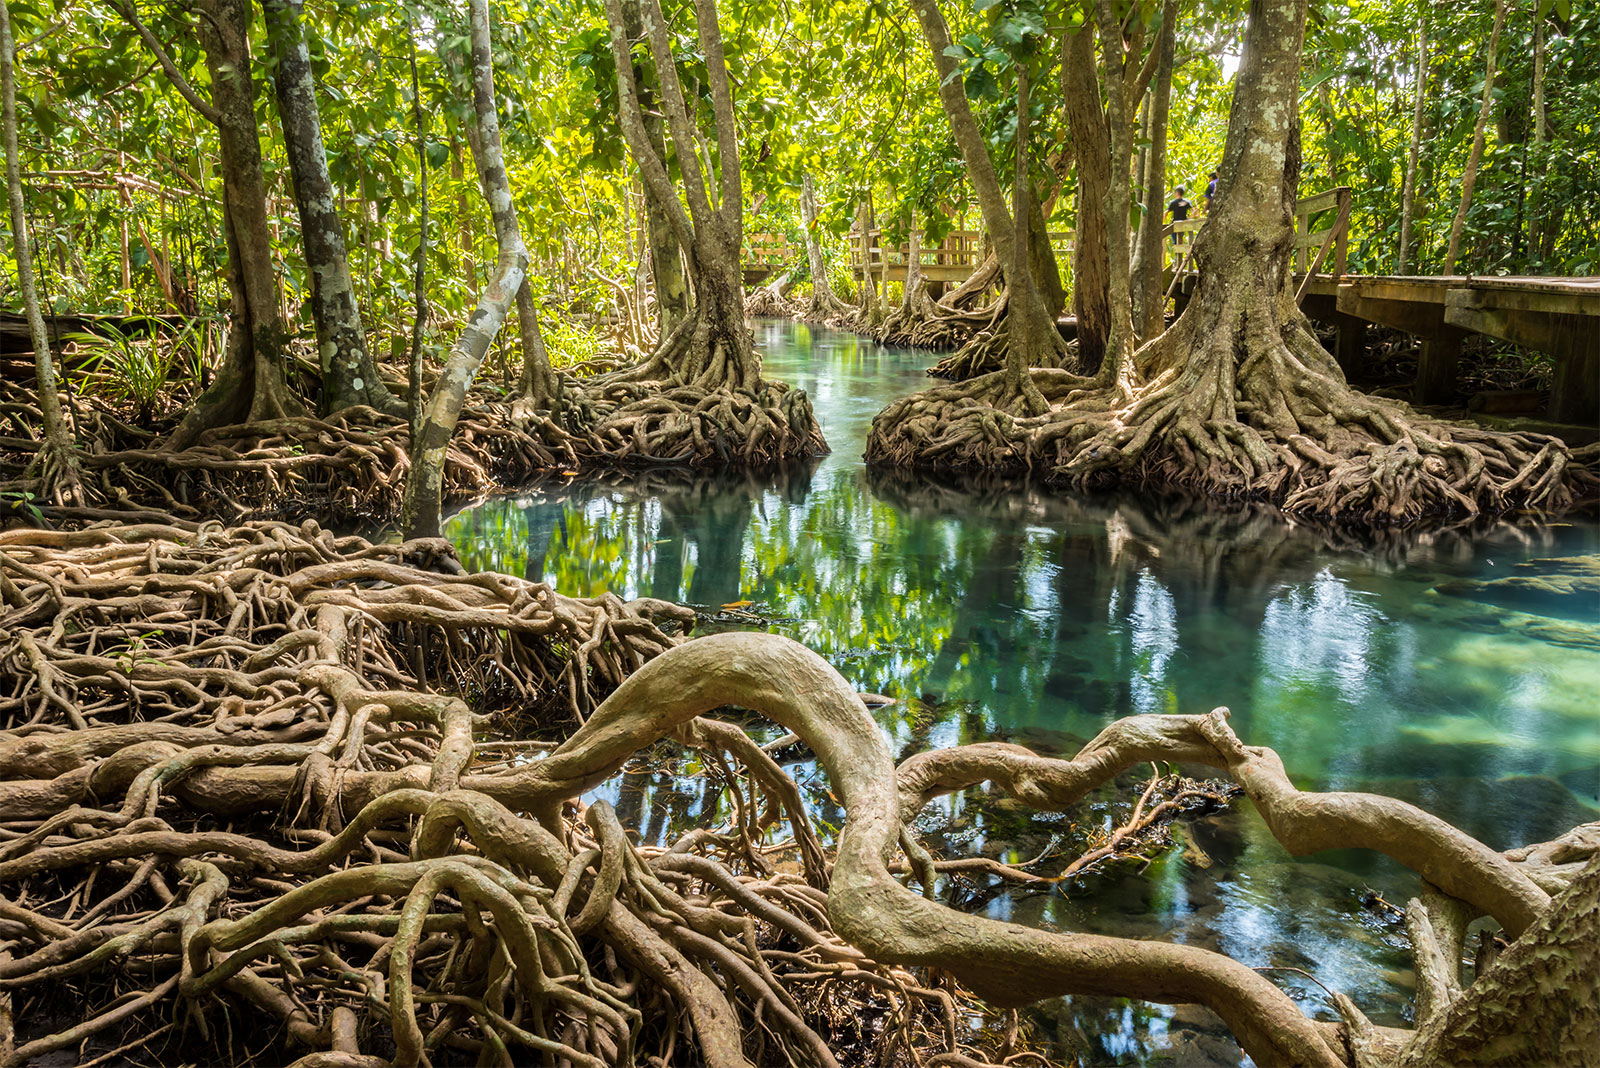 habitats mangrove | Ocean Life Education